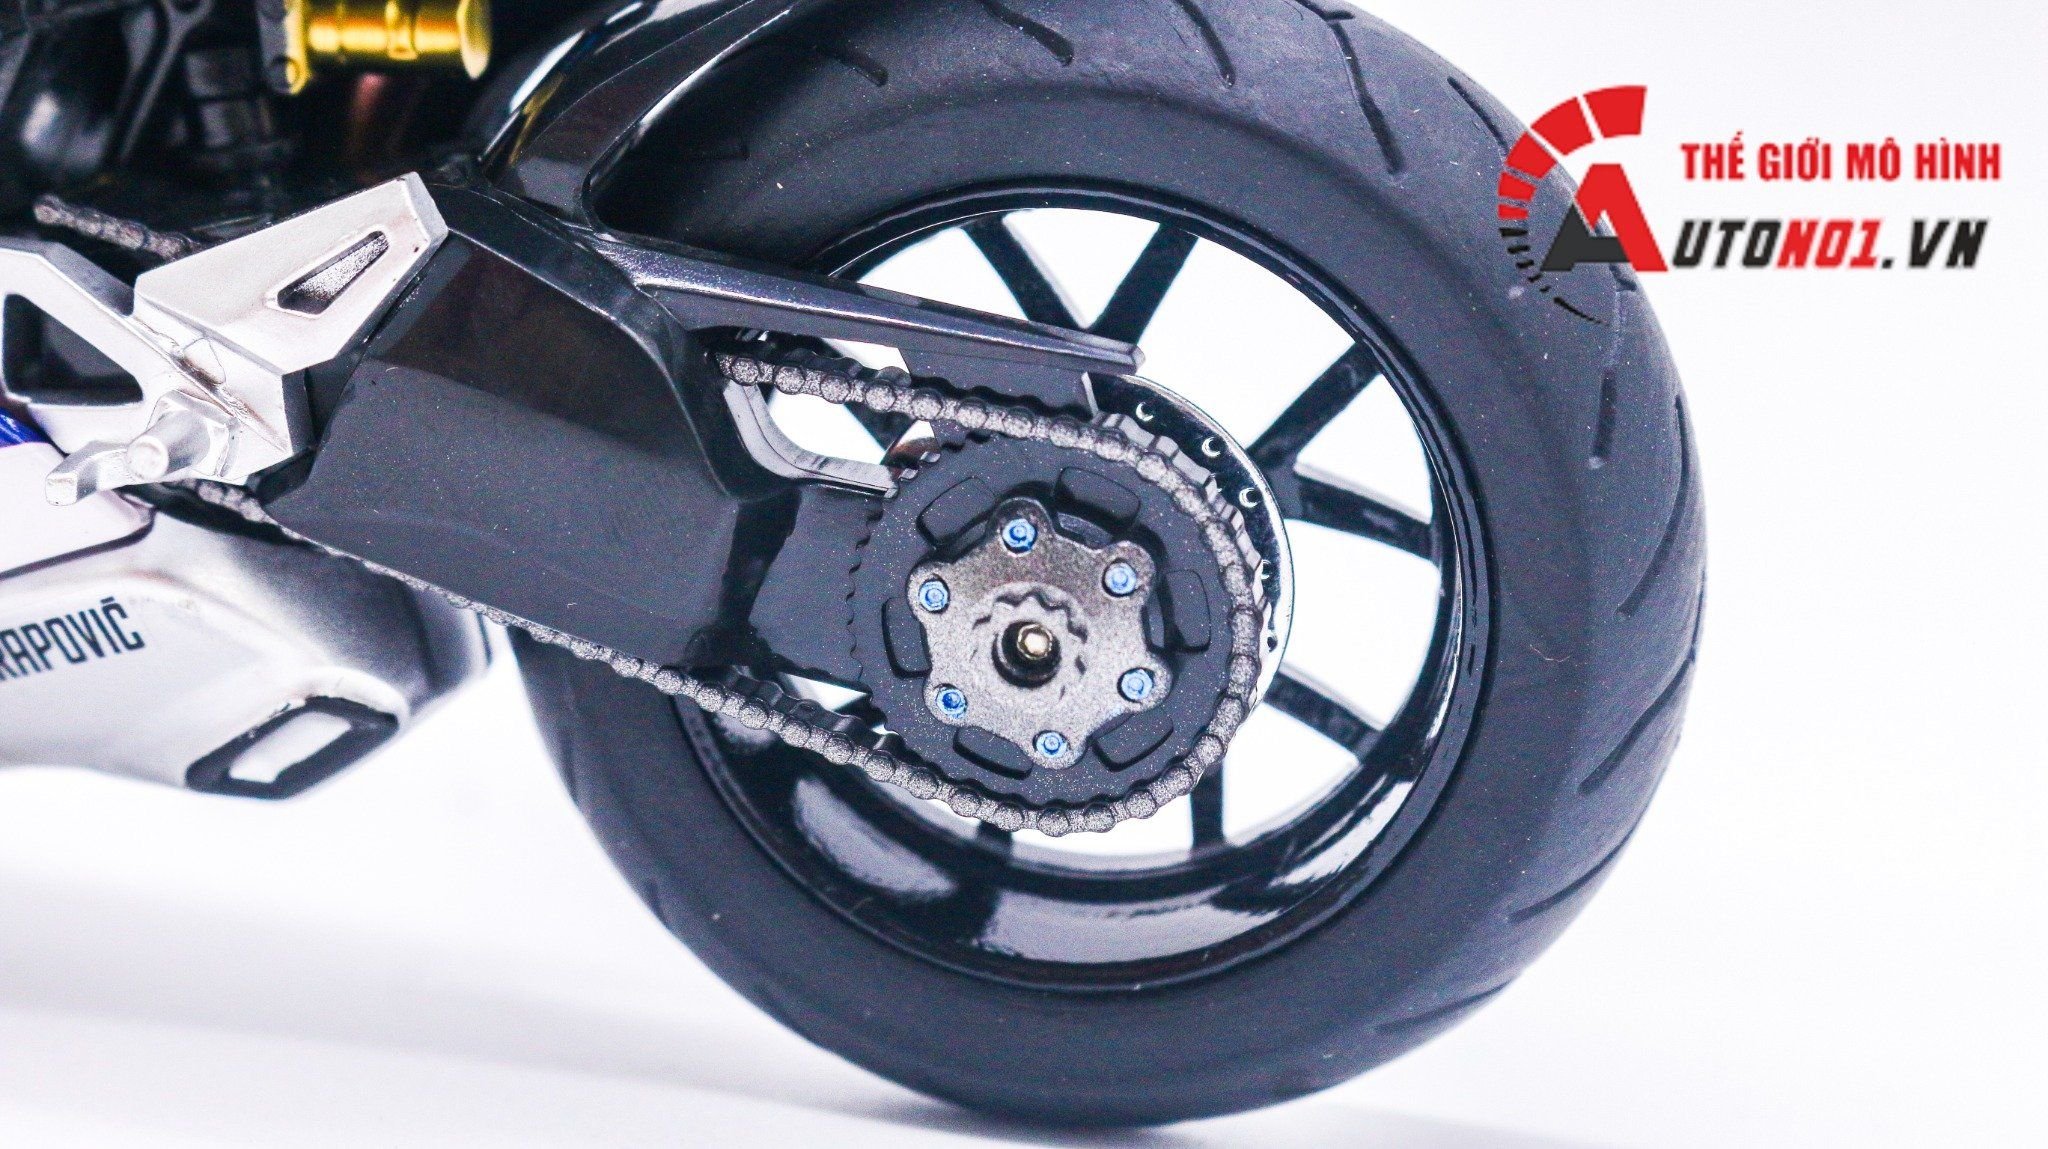  Mô hình xe độ Ducati panigale V4S Reale Anvinta độ nồi tỉ lệ 1:12 Autono1 D223M 